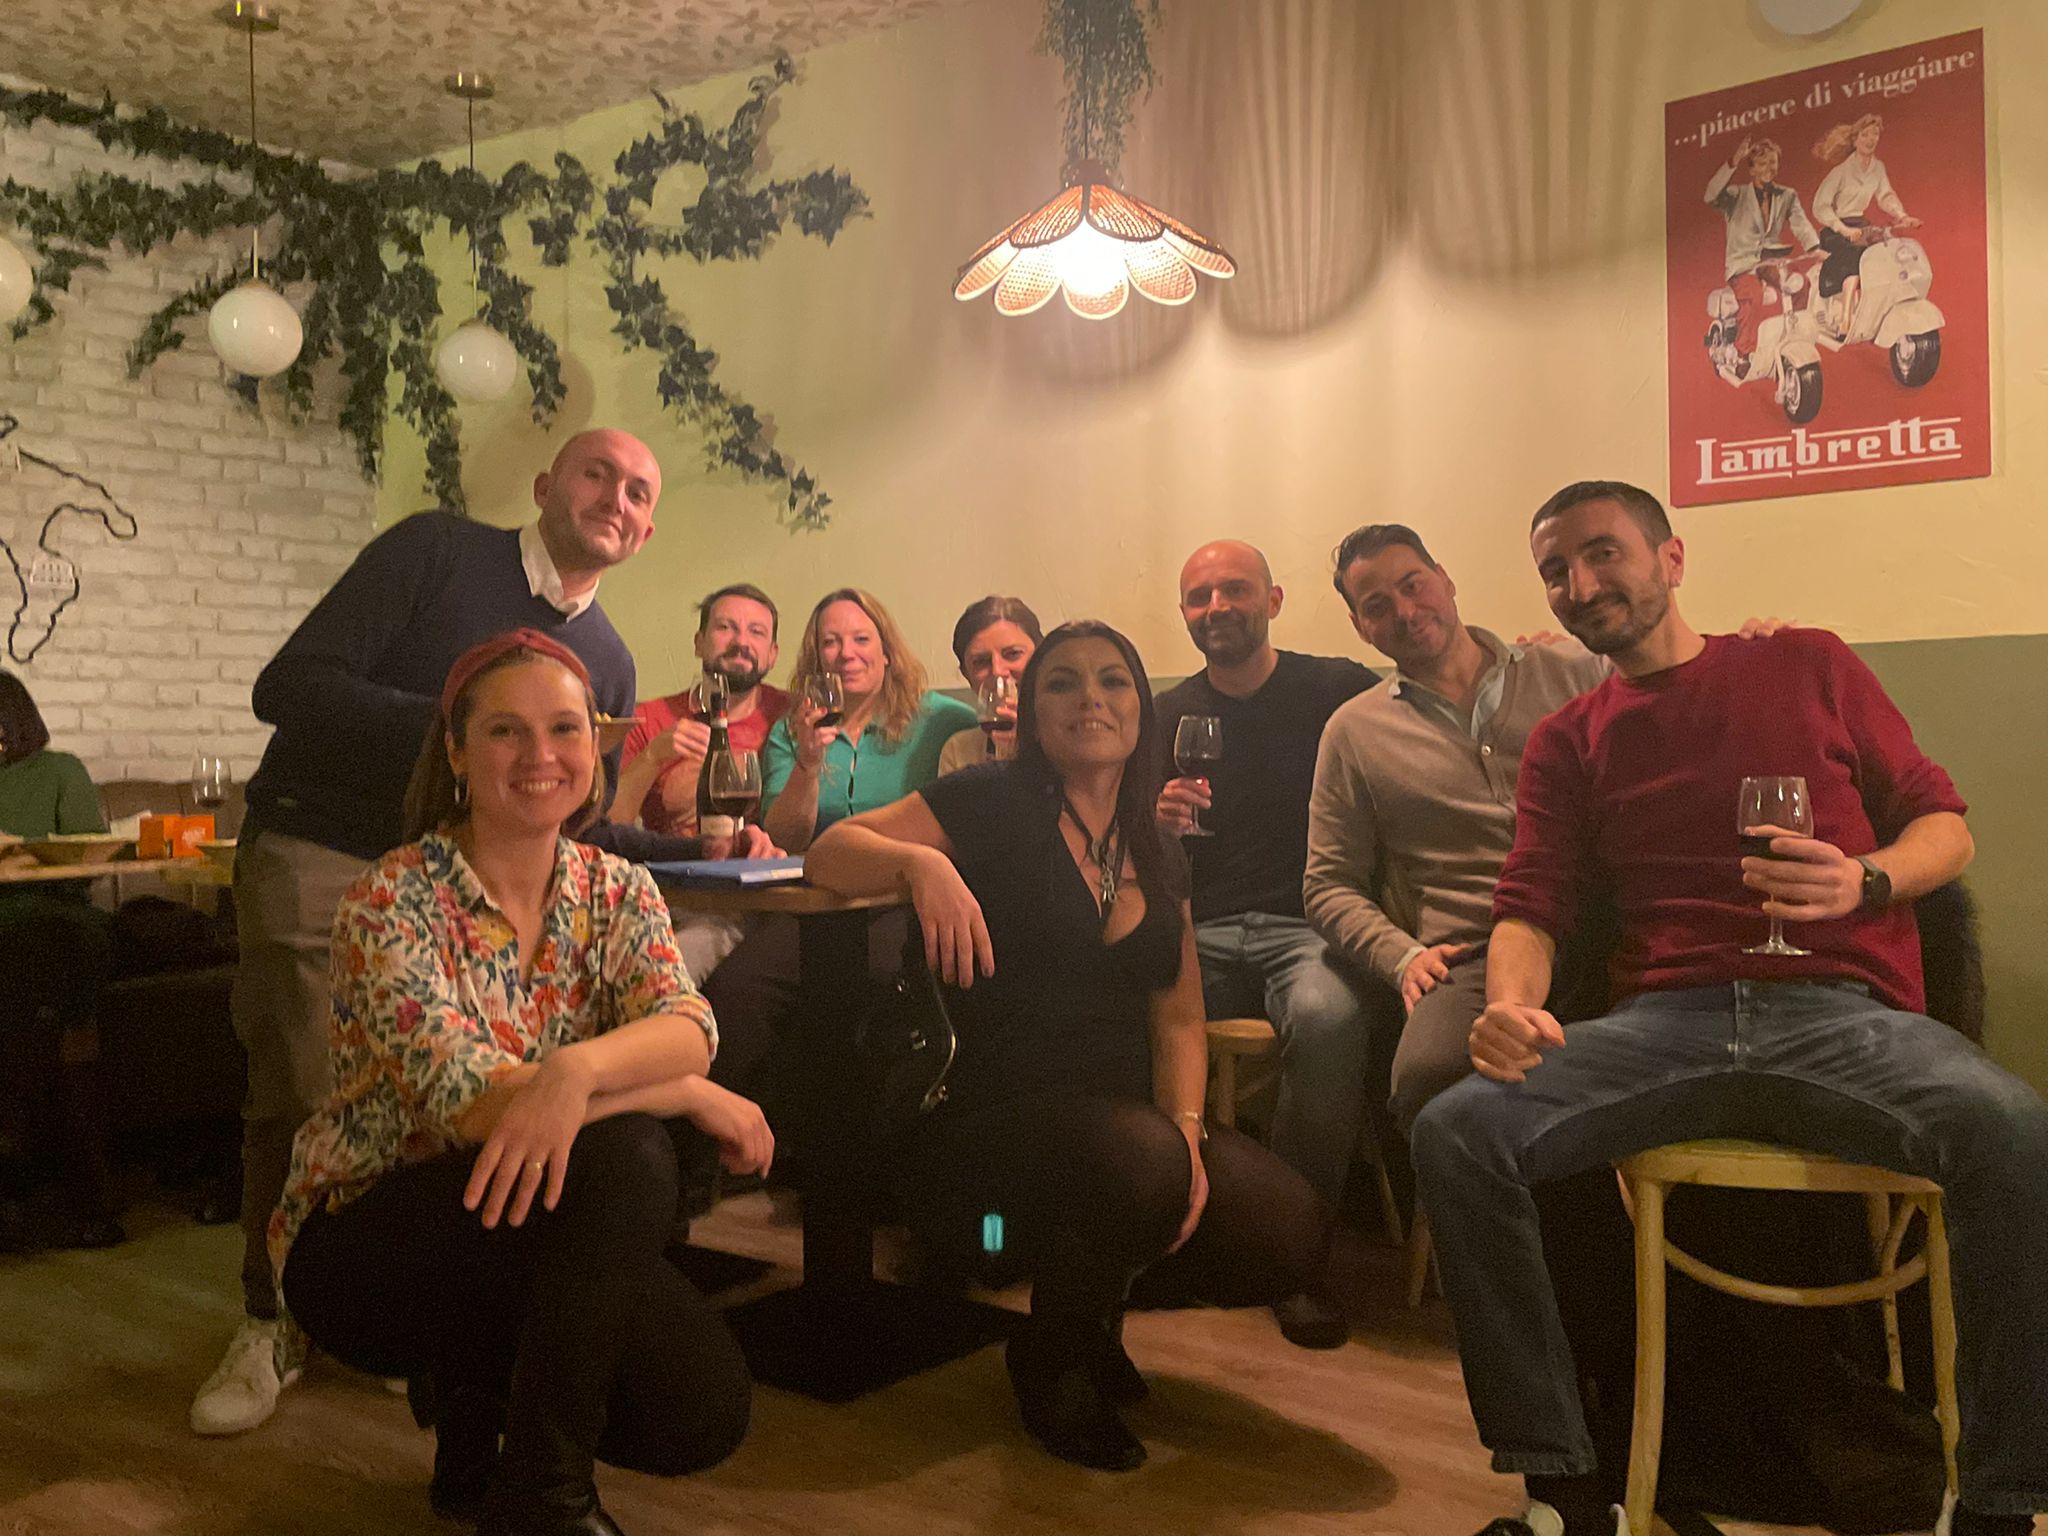 Gruppo di siciliani e ospiti durante la serata al Just Italia.